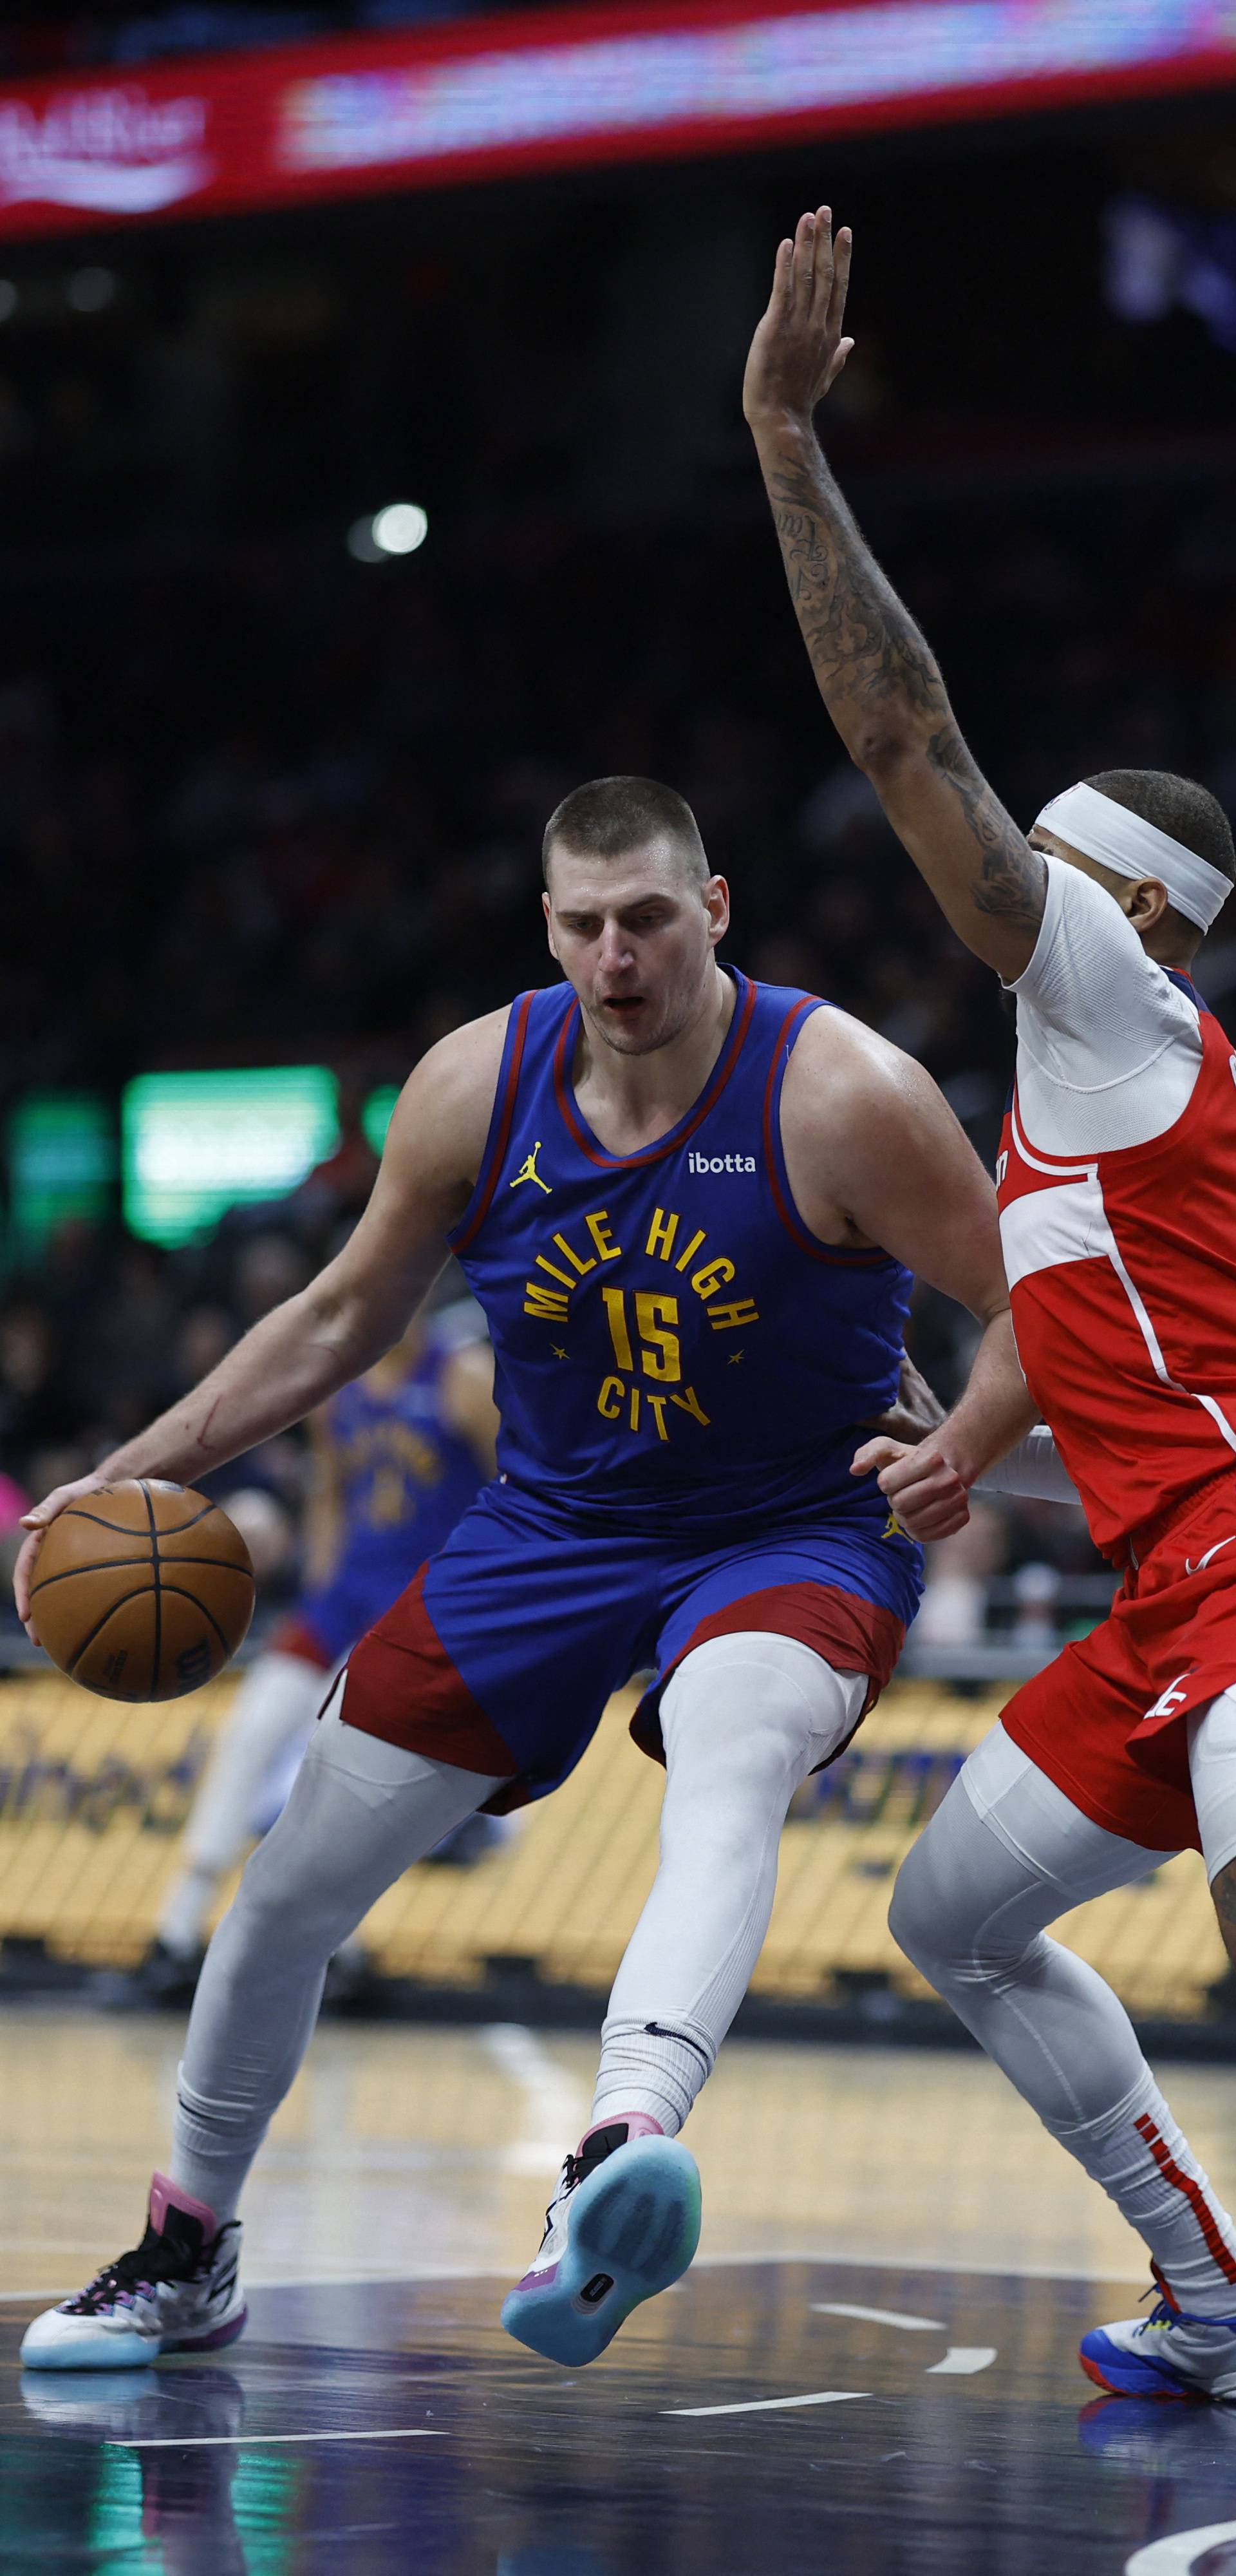 NBA: Denver Nuggets at Washington Wizards